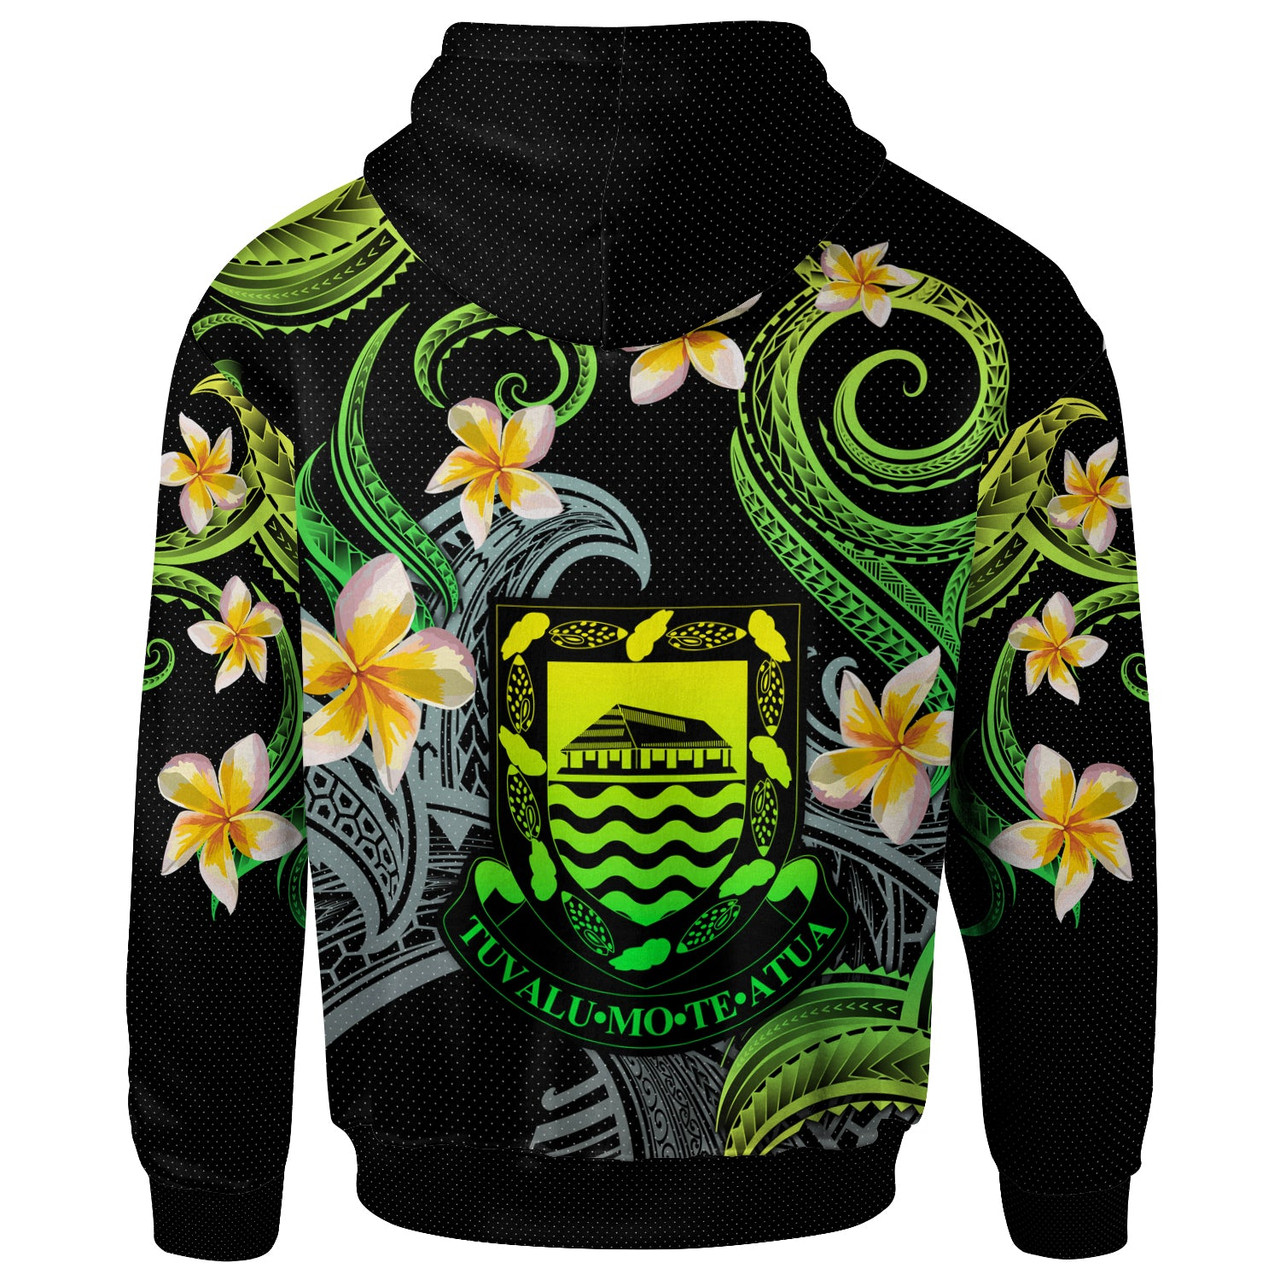 Tuvalu Hoodie - Custom Personalised Polynesian Waves with Plumeria Flowers (Green)